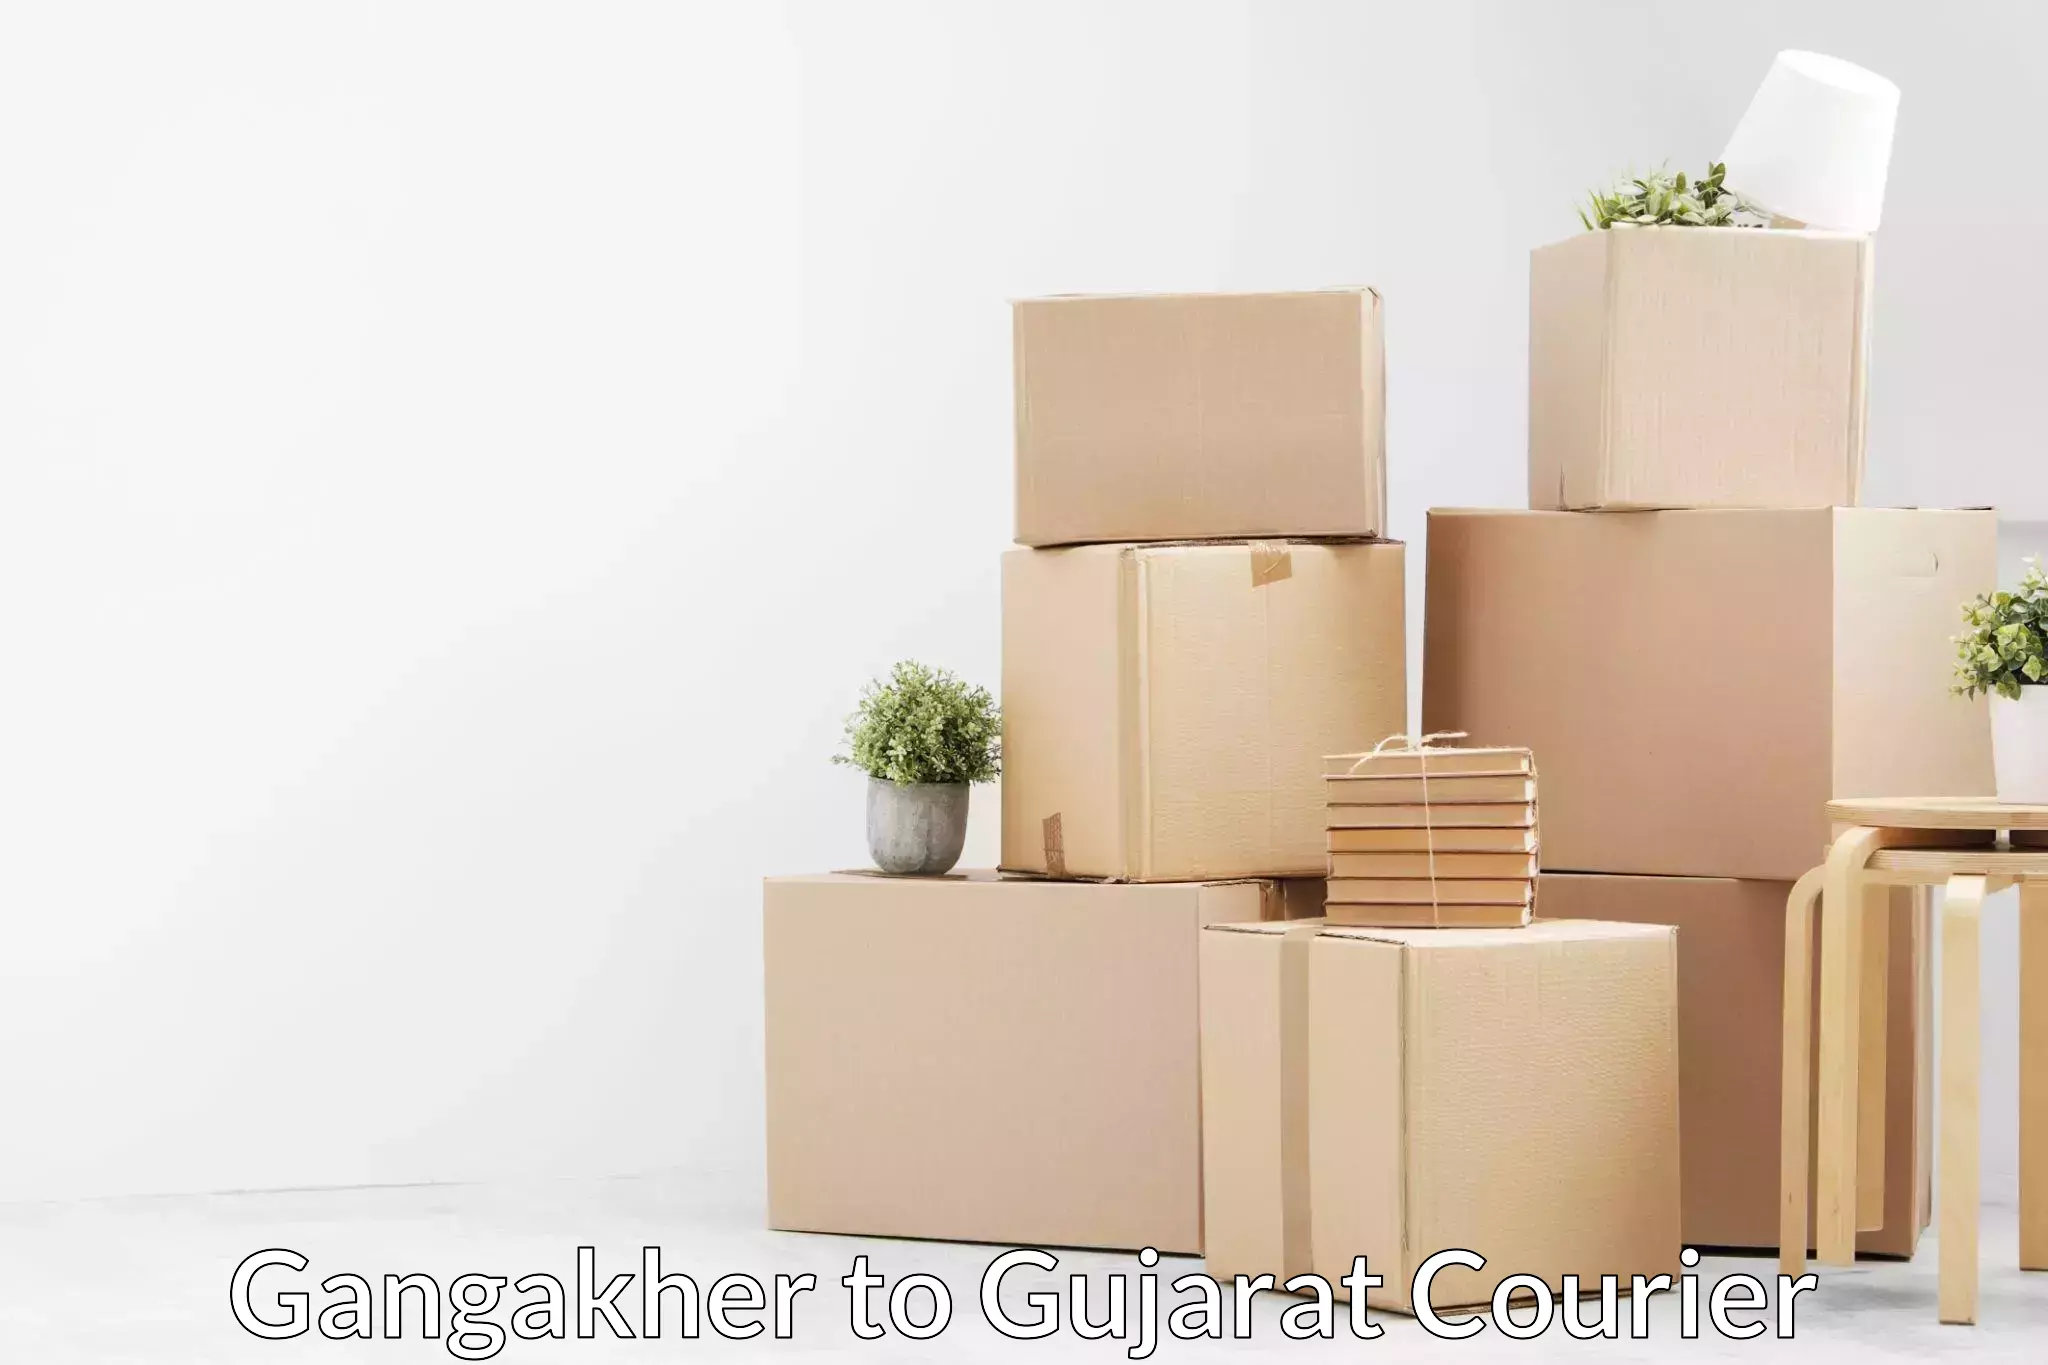 Furniture delivery service Gangakher to Kandla Port